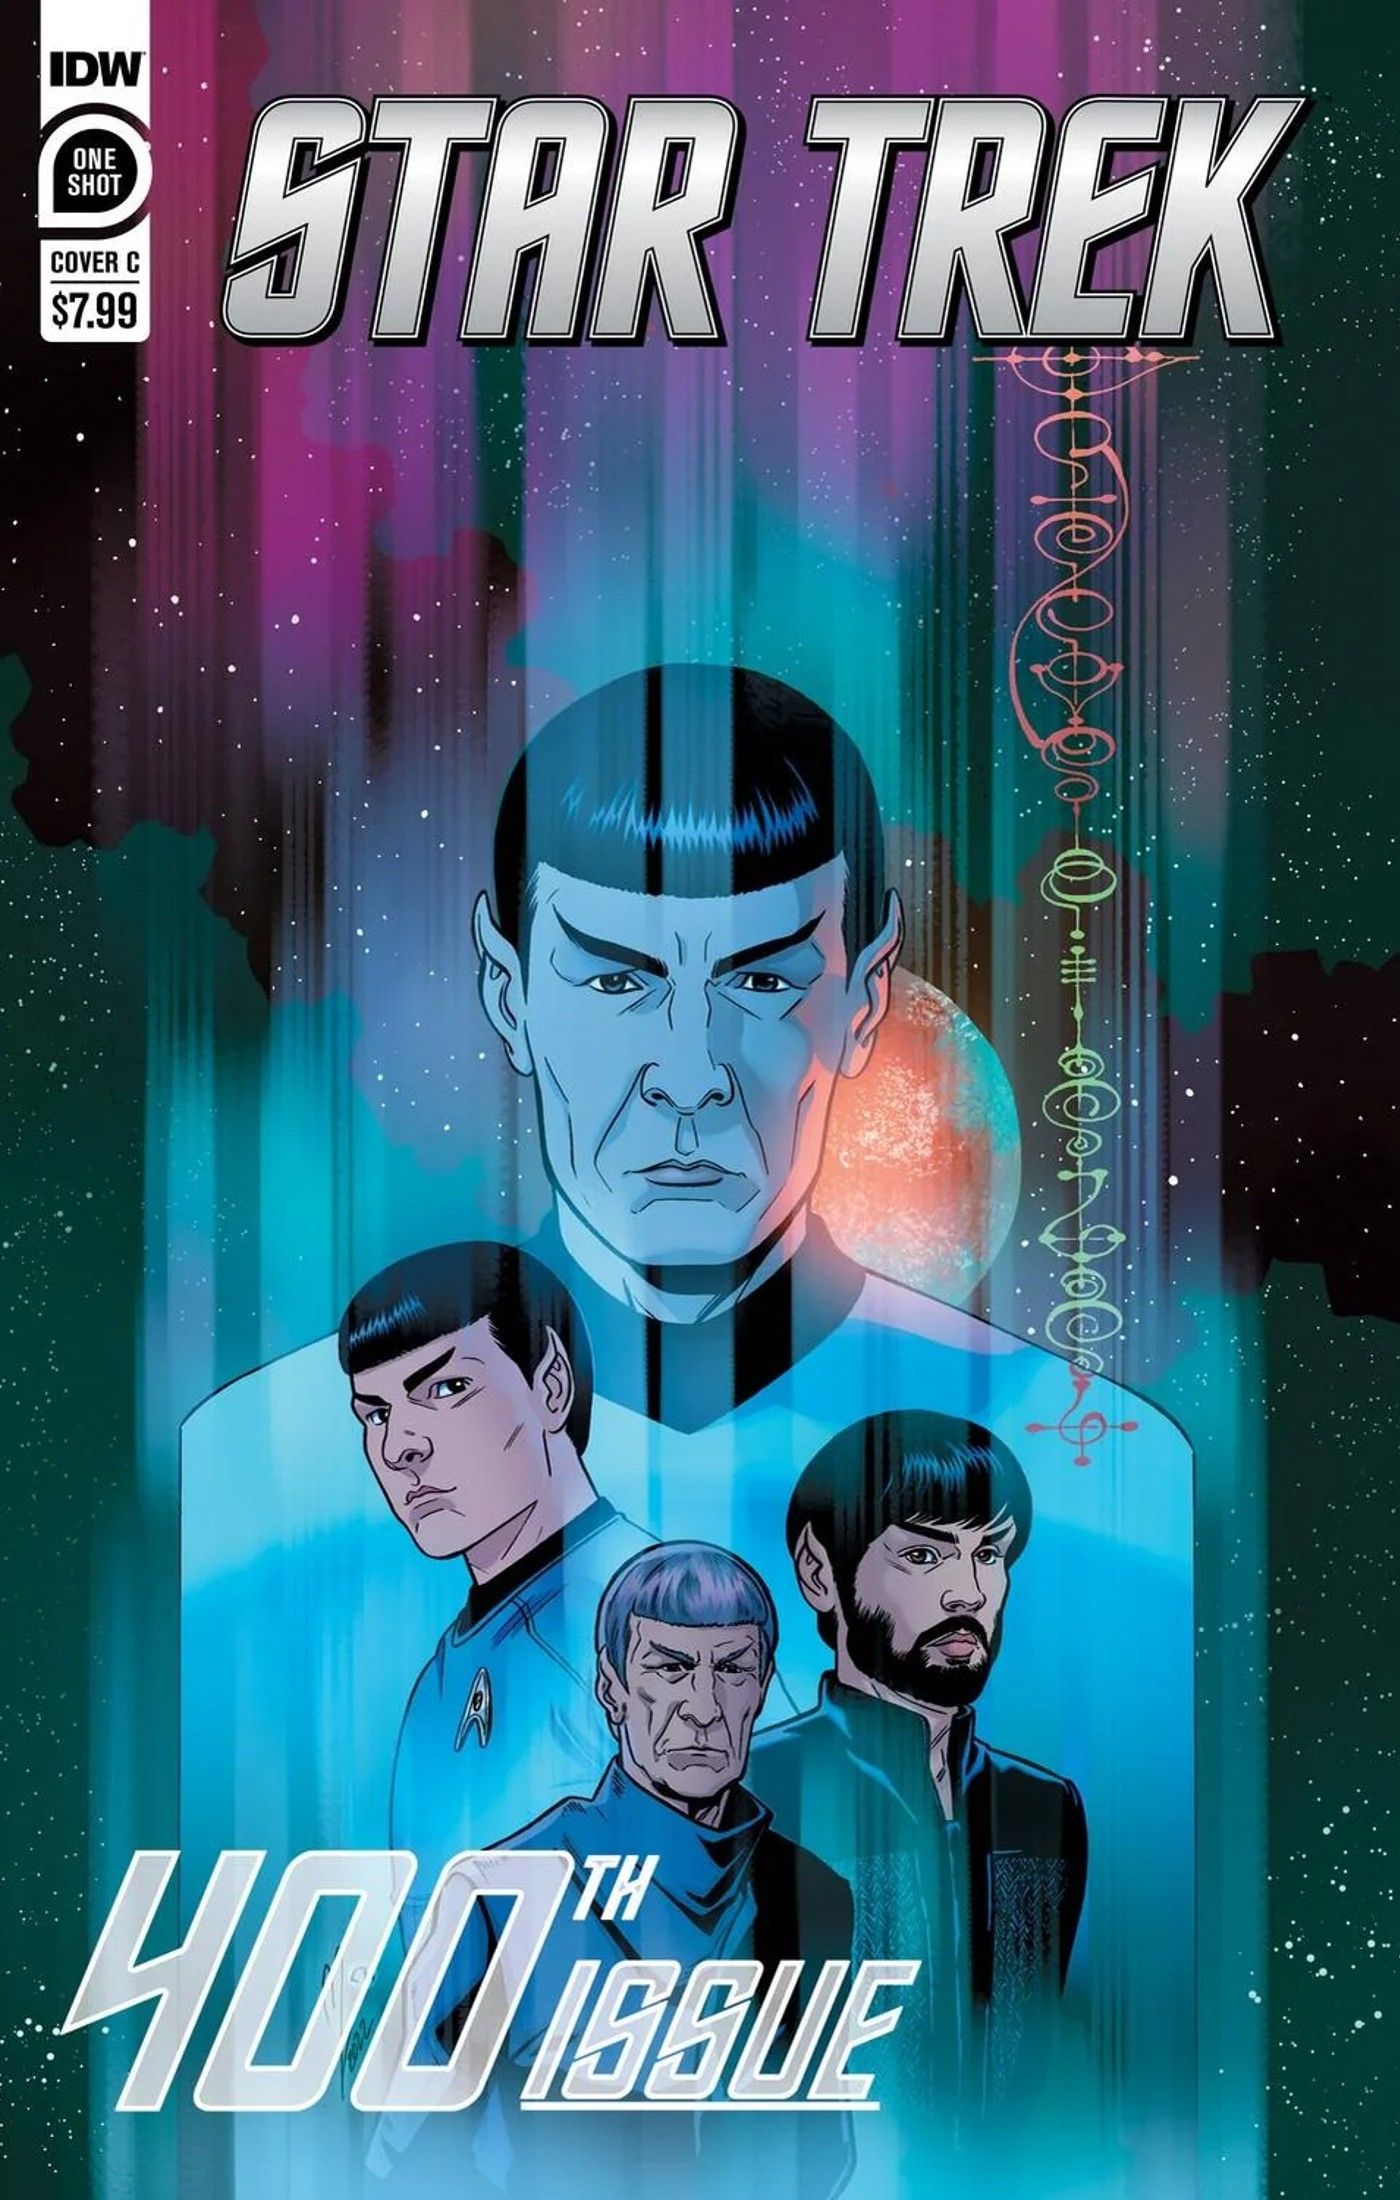 cover art for Spock Stark Trek #400